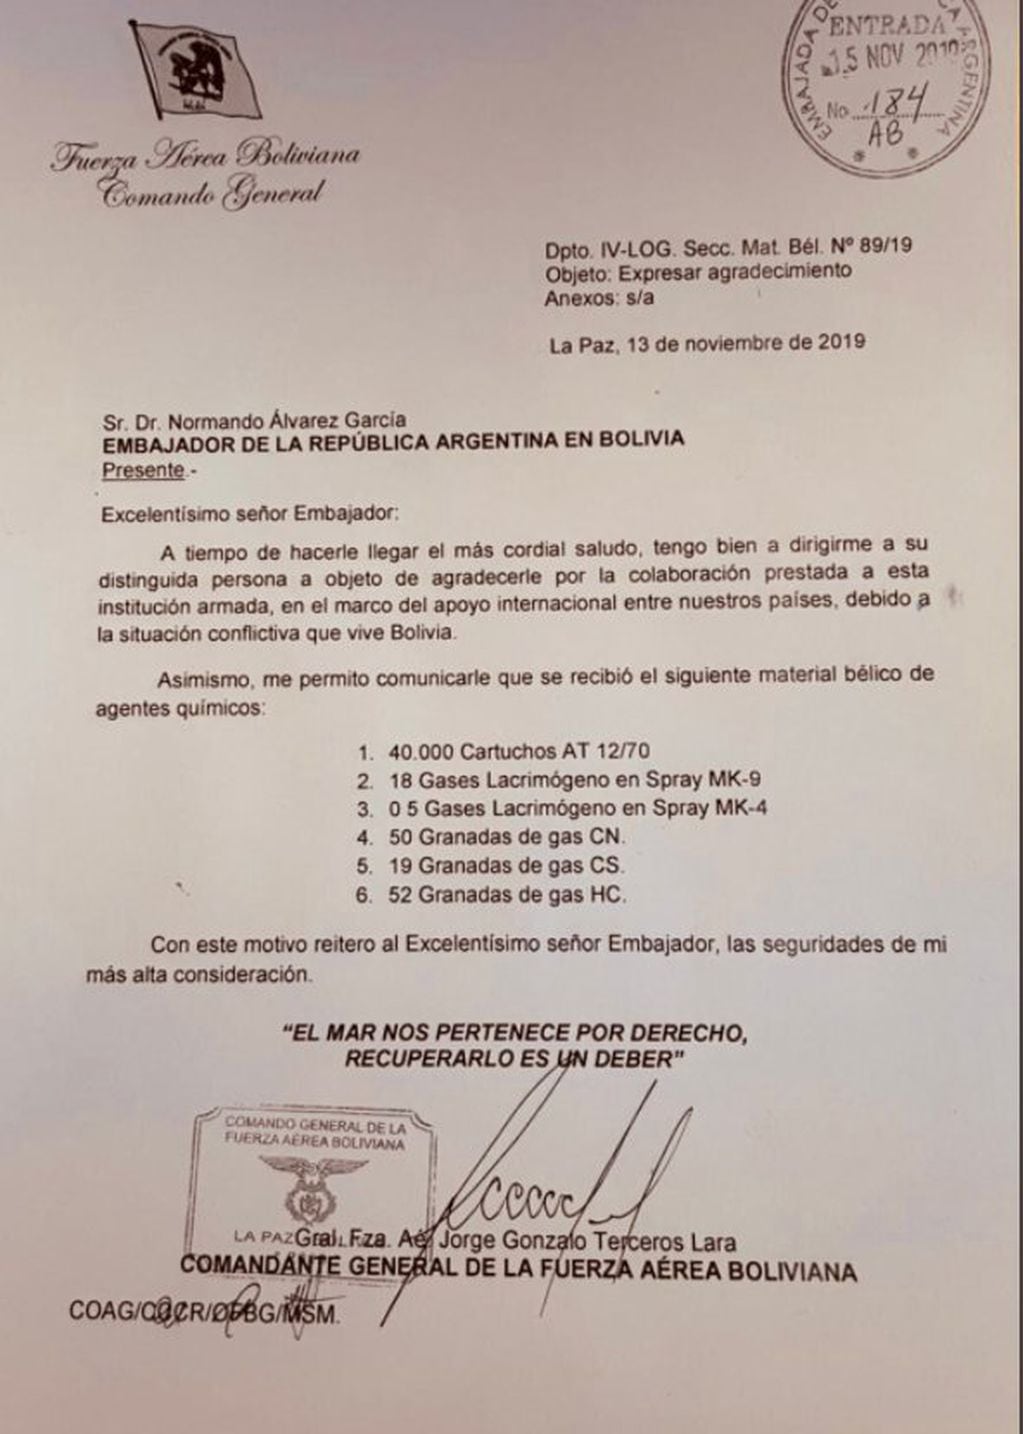 La carta de Jorge Gonzalo Terceros Lara a Normando Alvarez García. (Gobierno de Bolivia)